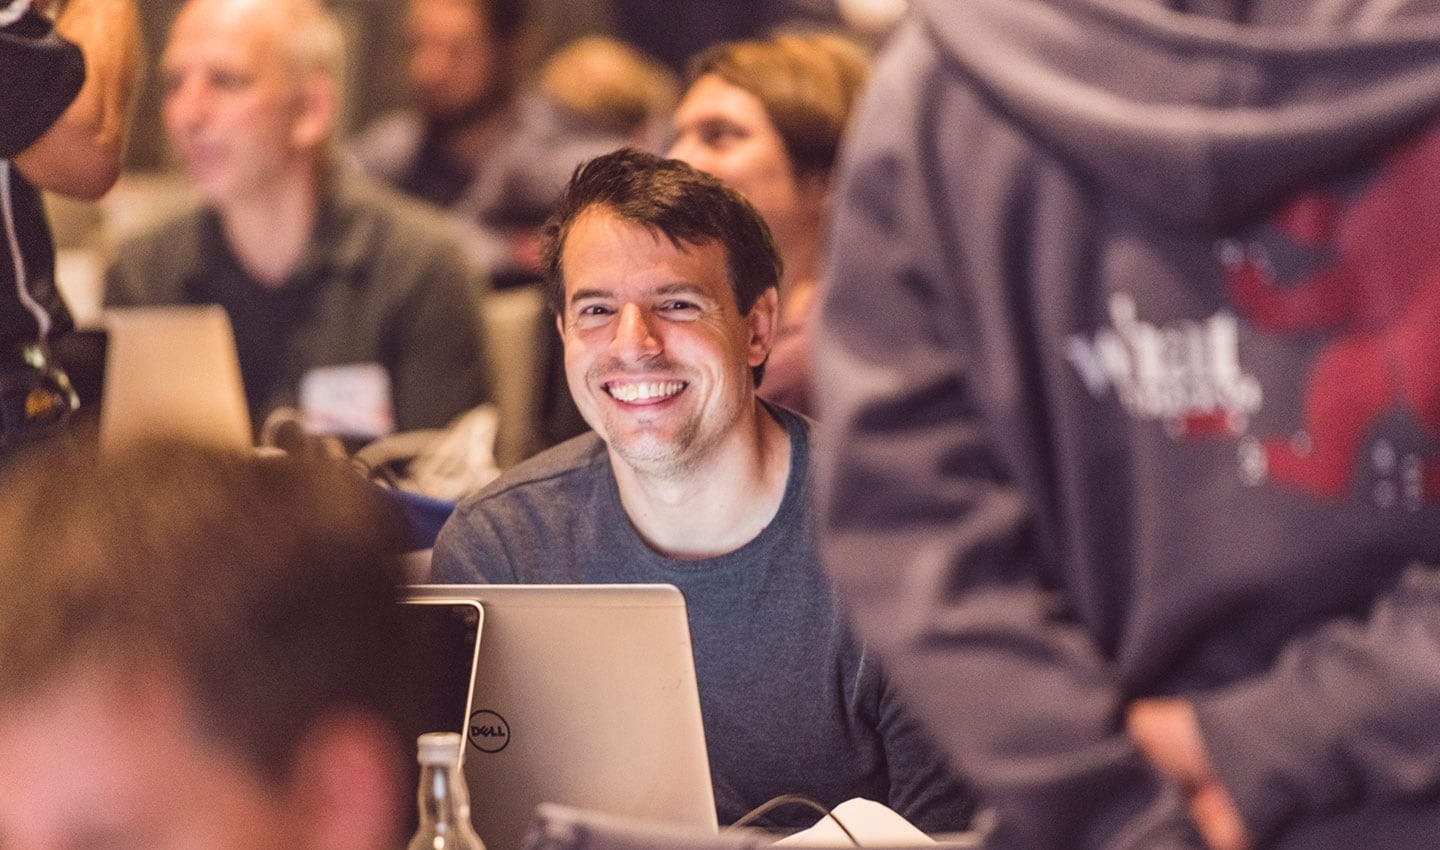 A hackathon participant in Berlin, 2018